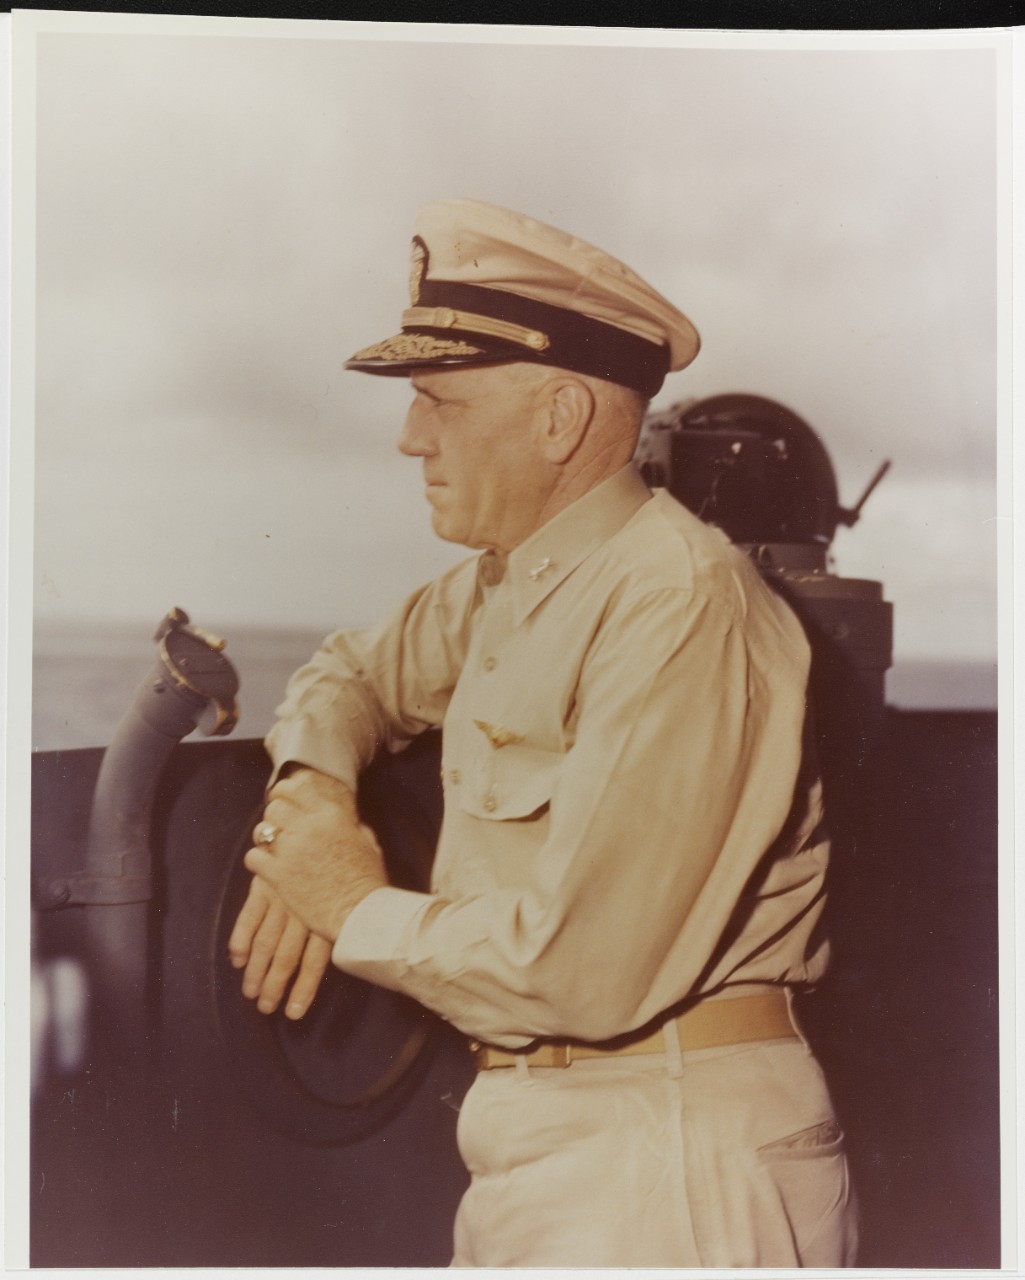 Rear Admiral Charles A. Pownall, USN